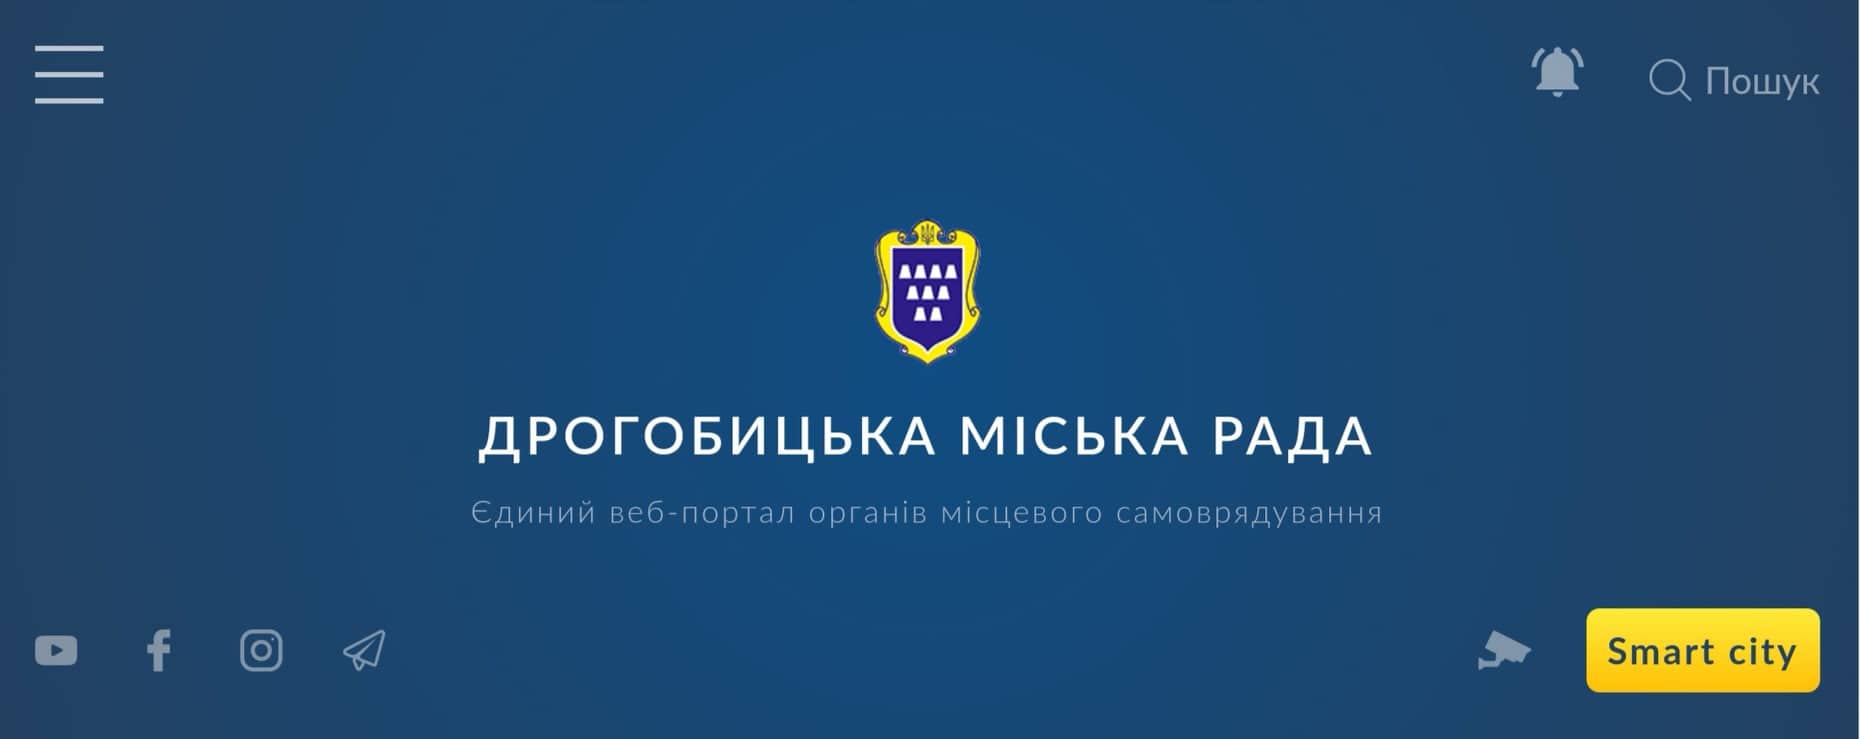 Цього тижня у Дрогобичі запрезентують оновлений офіційний інтернет-портал міста